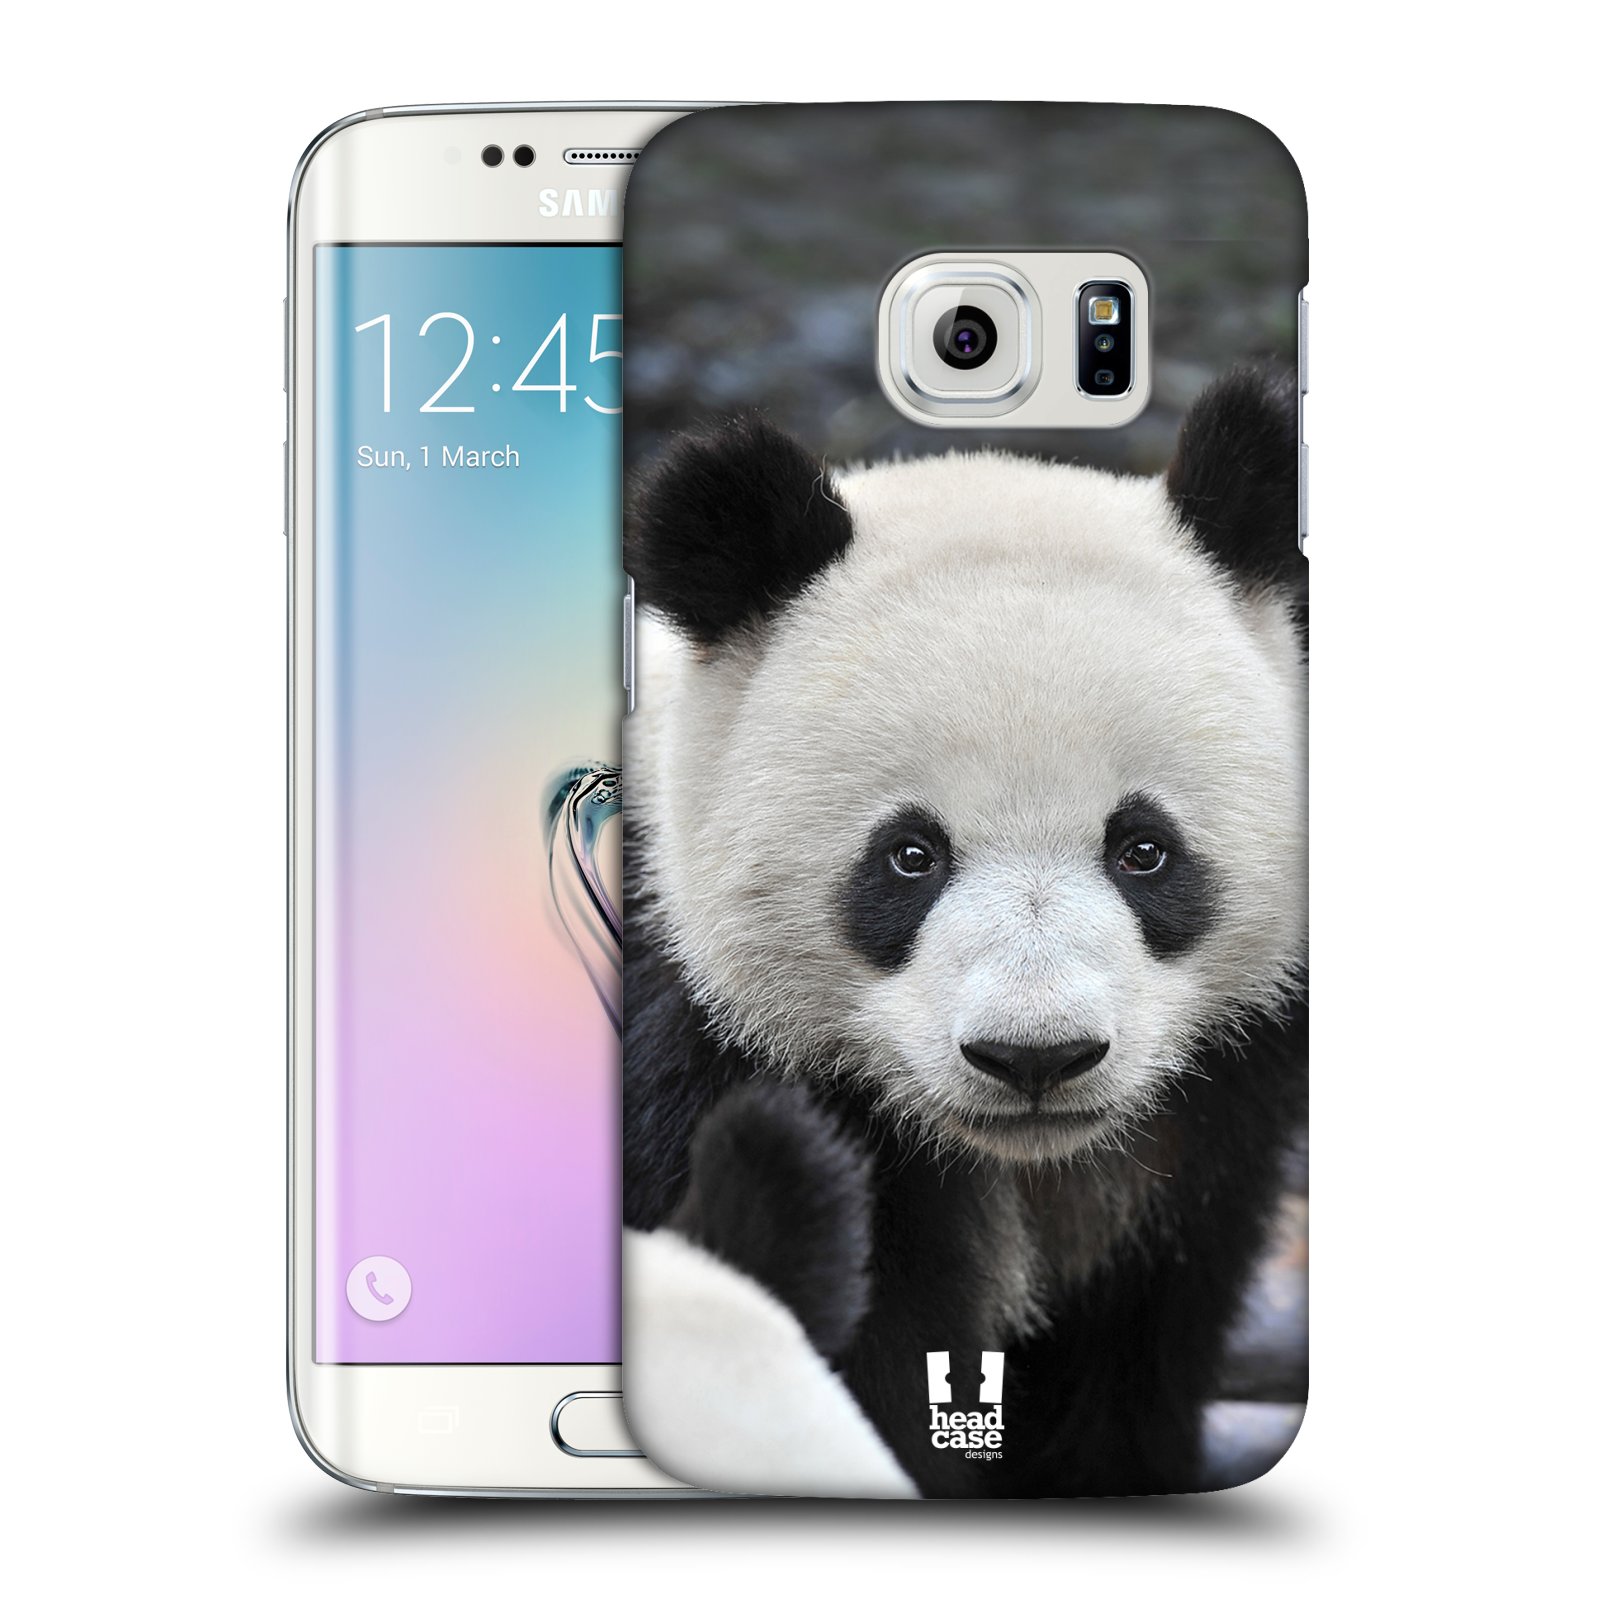 Zadní obal pro mobil Samsung Galaxy S6 EDGE - HEAD CASE - Svět zvířat medvěd panda